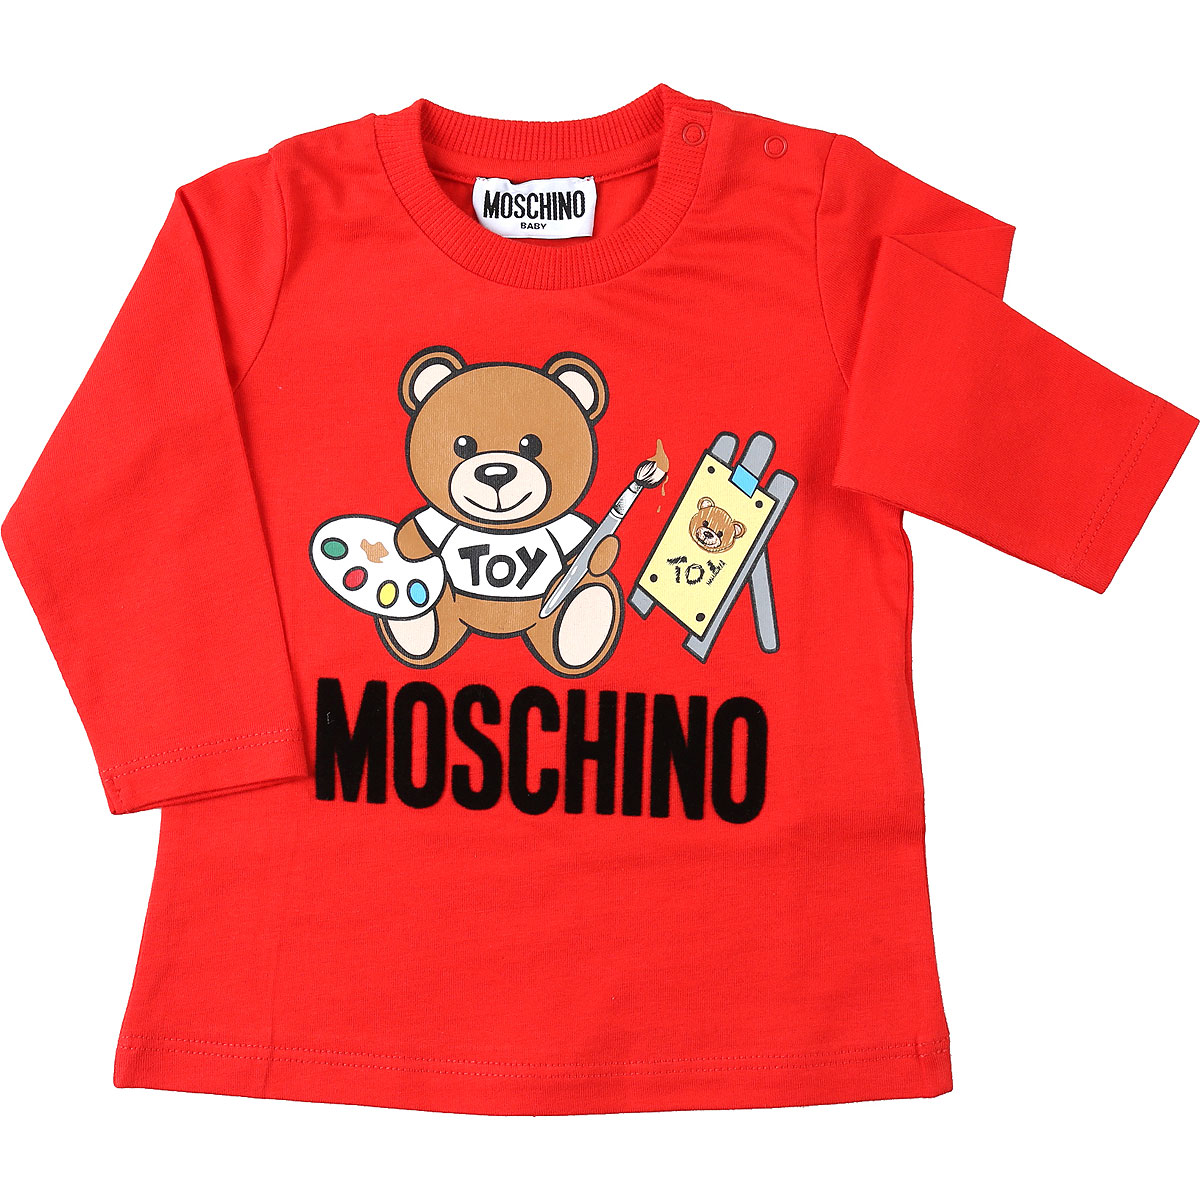 Moschino Baby T-Shirt für Jungen Günstig im Sale, Rot, Baumwolle, 2017, 12 M 18M 24M 6M 9M